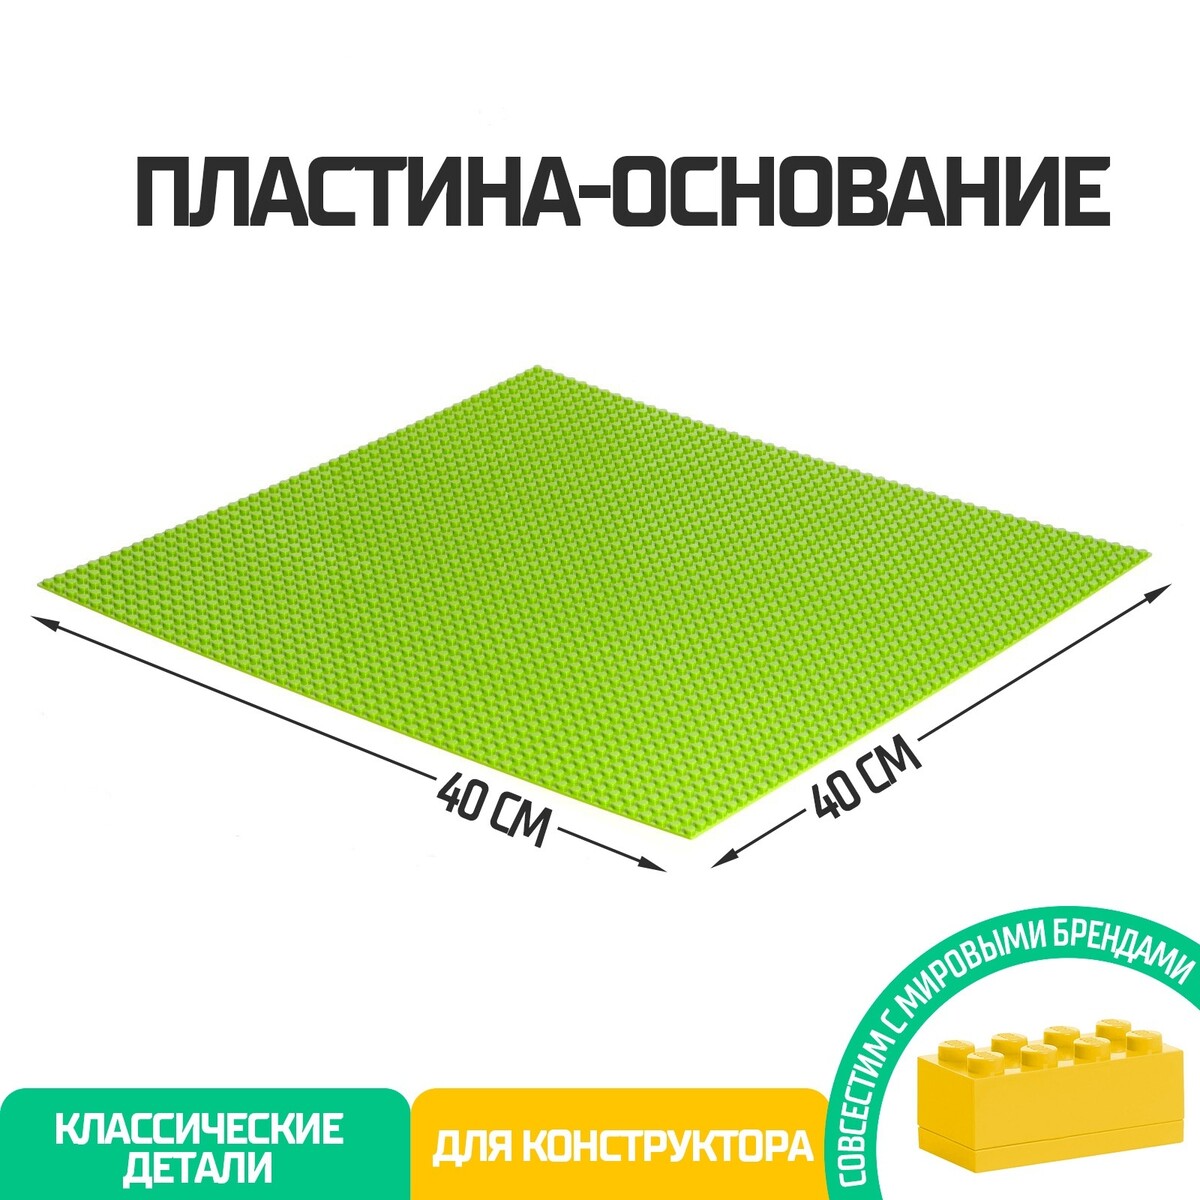 Пластина-основание для конструктора, 40 × 40 см, цвет салатовый пластина основание для конструктора 40 × 40 см салатовый